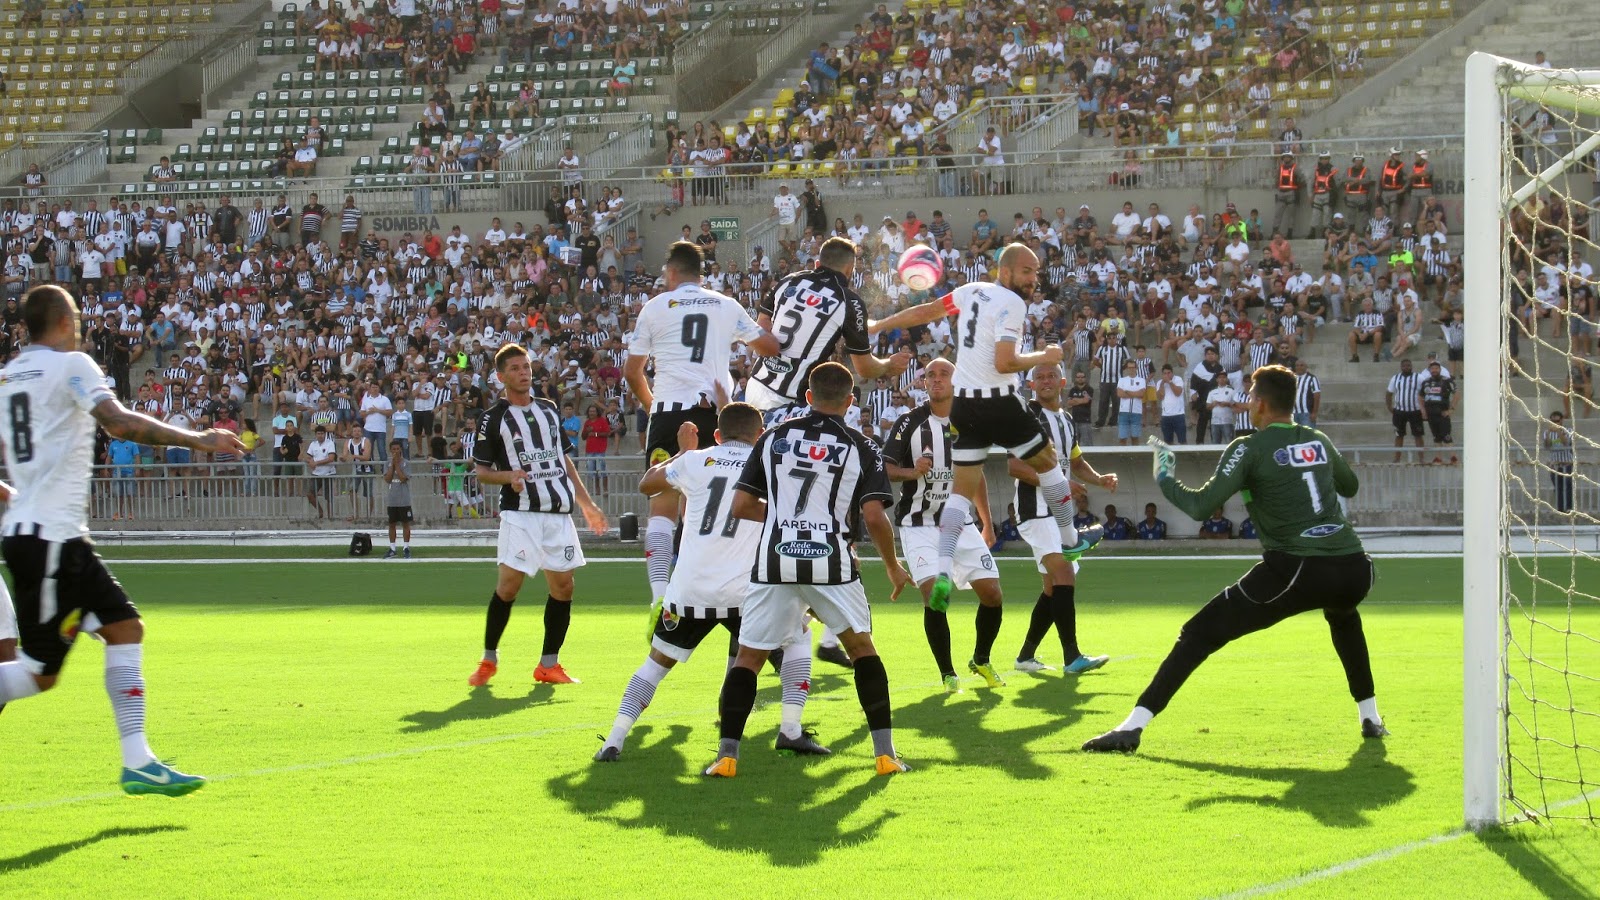 Pressionado, torcida cobra vitória do Botafogo (PB) contra o Treze, neste domingo, no Almeidão